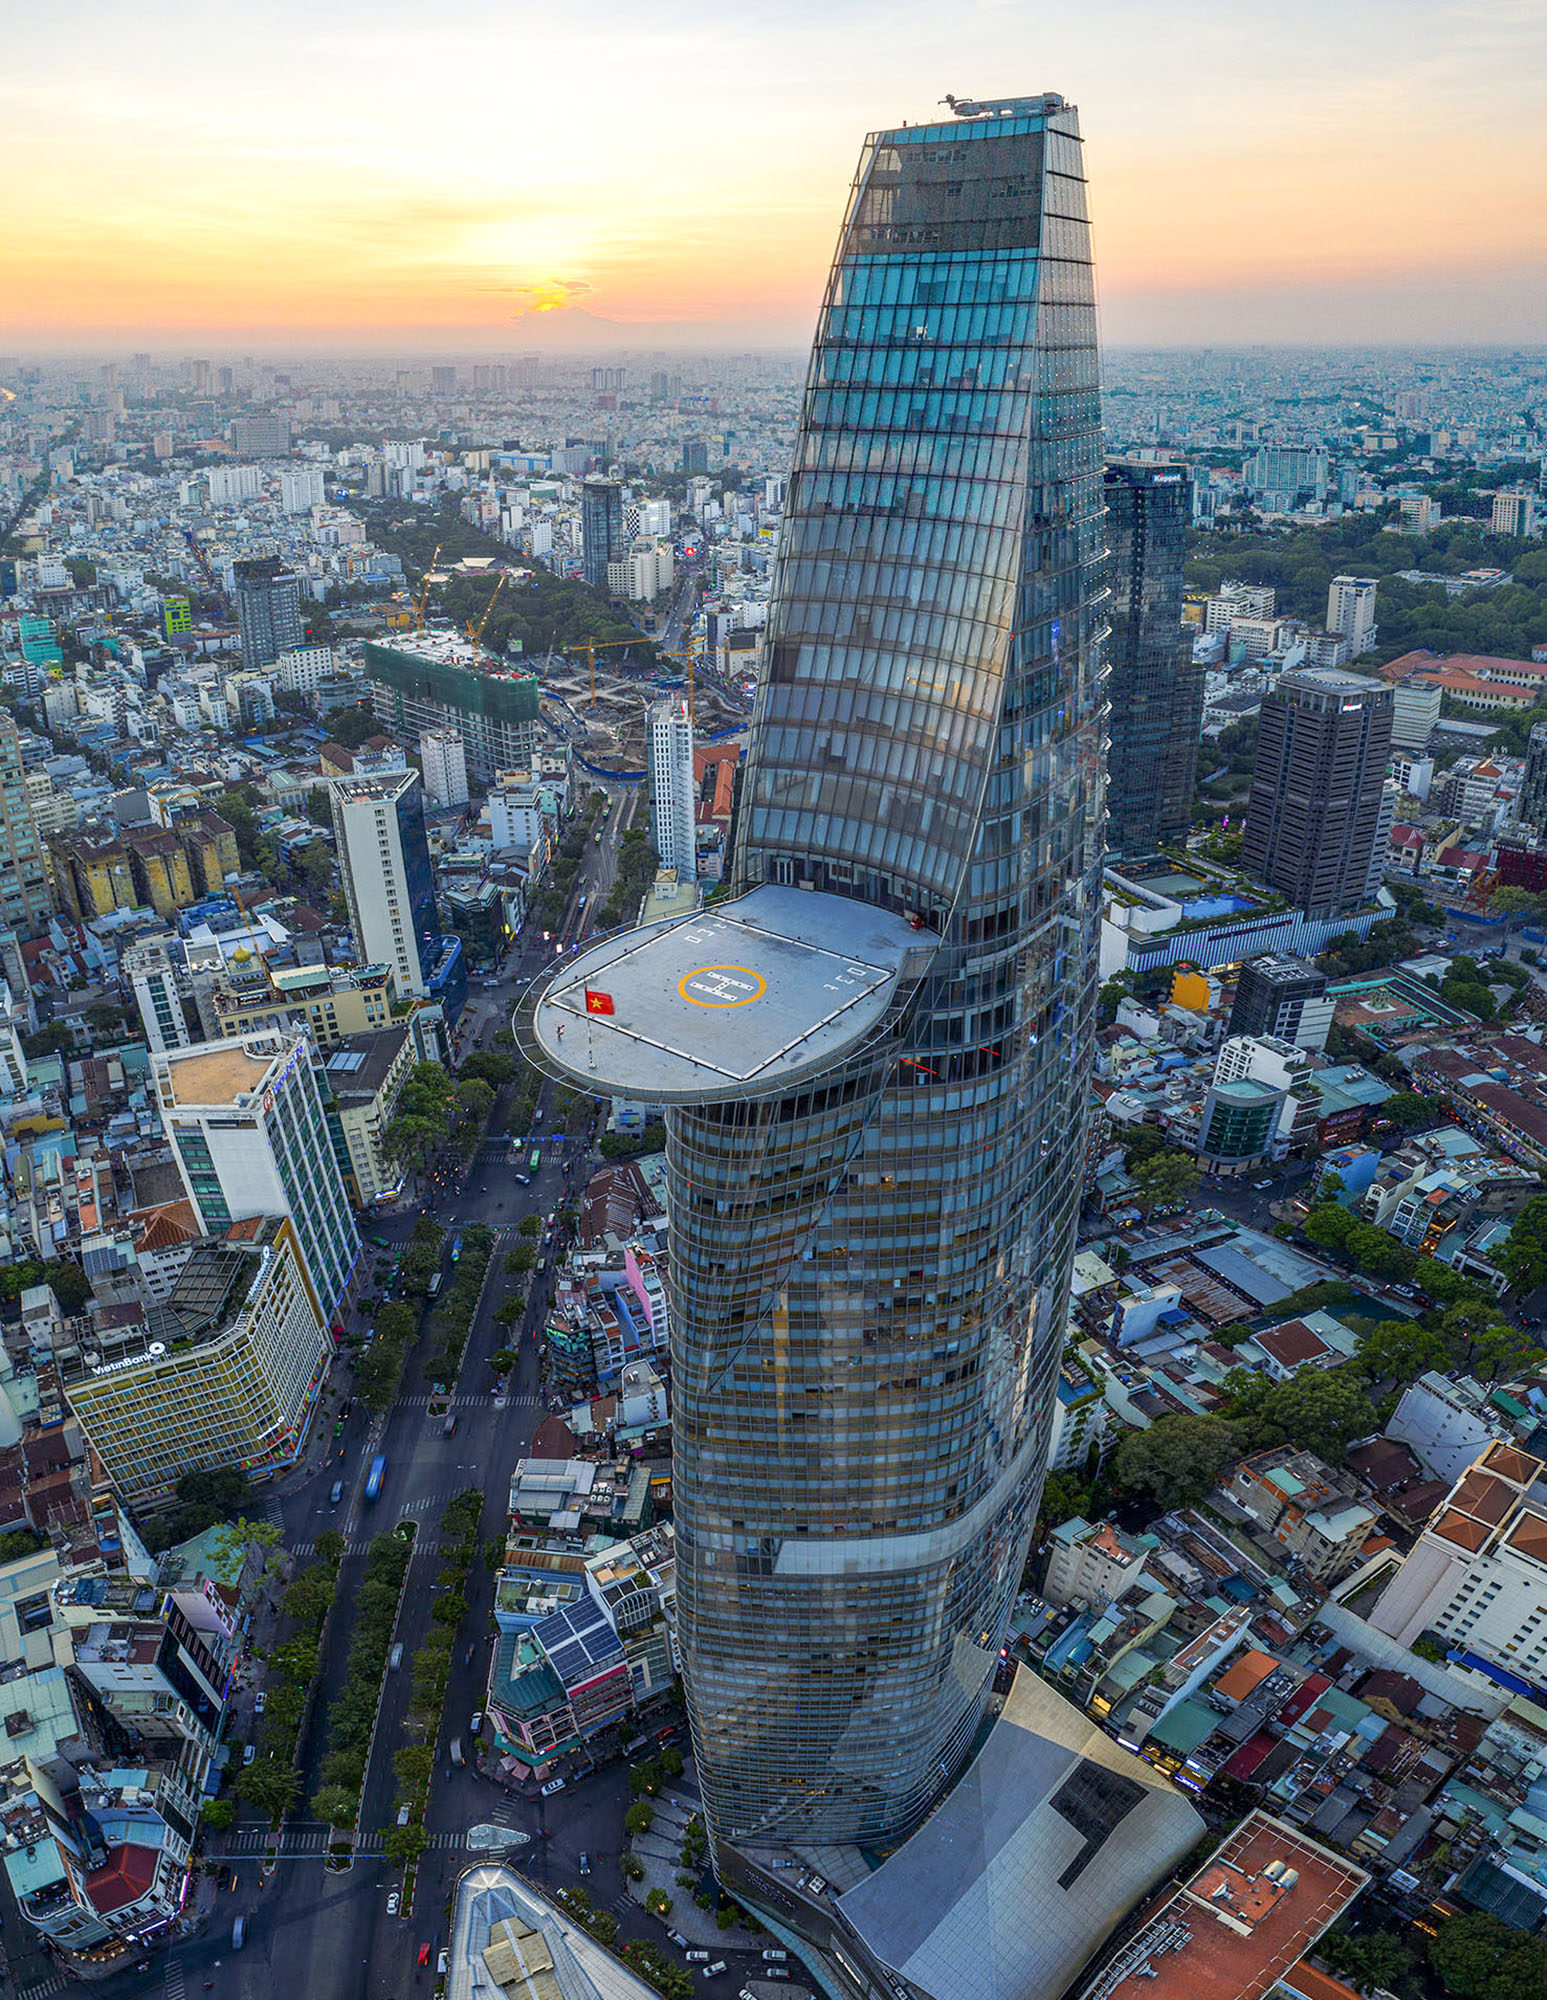 Công trình được lấy cảm hứng từ hoa sen - Quốc hoa của Việt Nam. Tòa tháp Bitexco có một đài quan sát ở tầng 49 dành cho khách tham quan có góc nhìn 360 độ ngắm toàn cảnh TP.HCM và sông Sài Gòn. Đây cũng là dự án đầu tiên của Việt Nam cho xây dựng sân đậu trực thăng ở tầng 52.